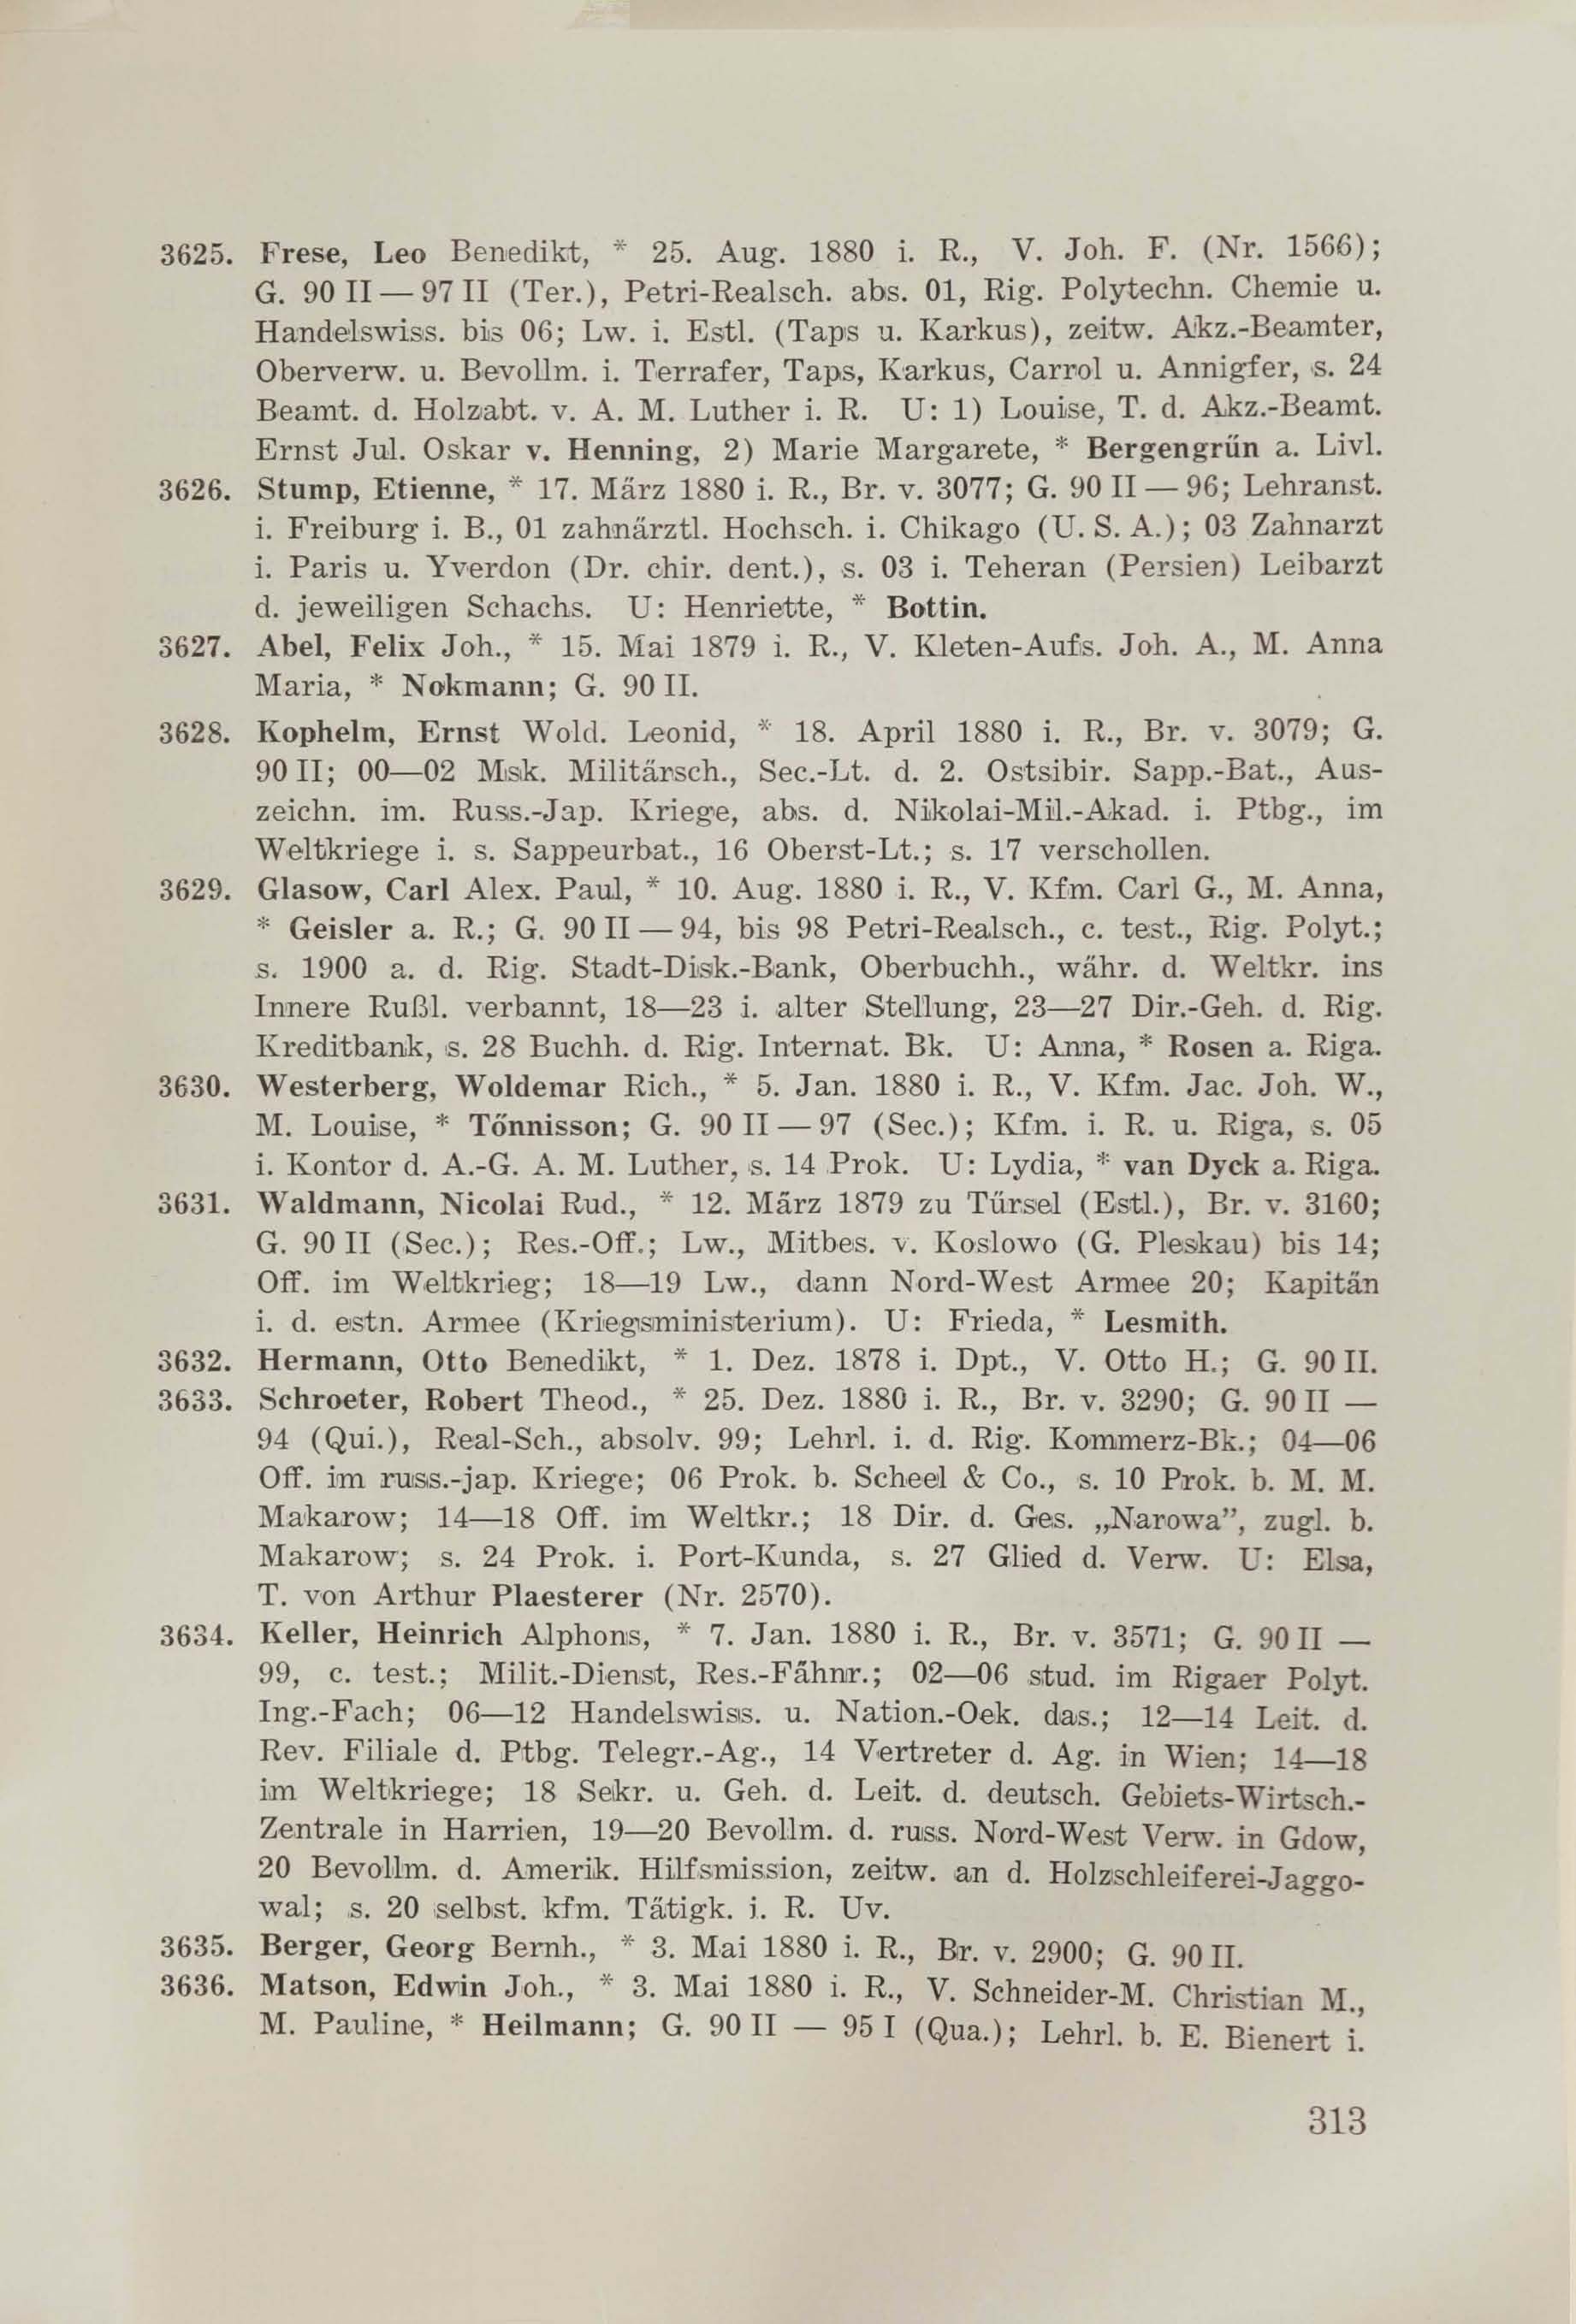 Schüler-Verzeichnis des Revalschen Gouvernements-Gymnasiums 1805–1890 (1931) | 323. (313) Main body of text